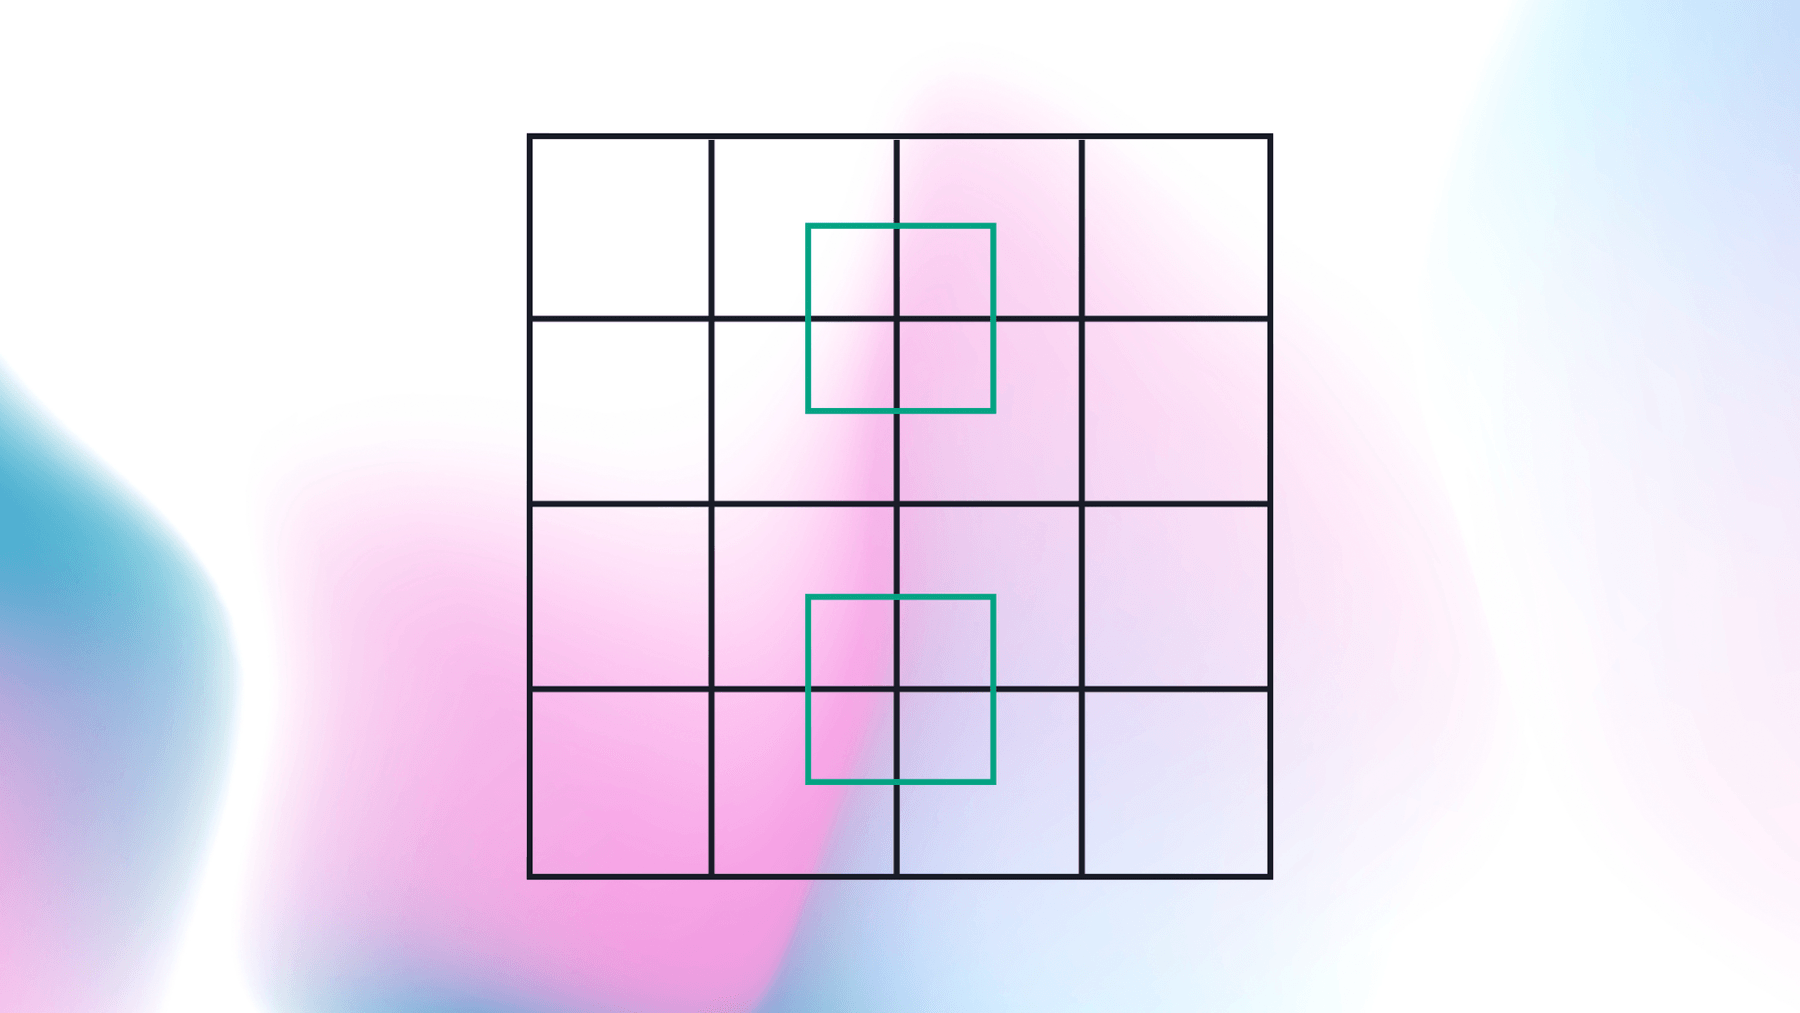 Provalo – Quanti quadrati riesci a contare?